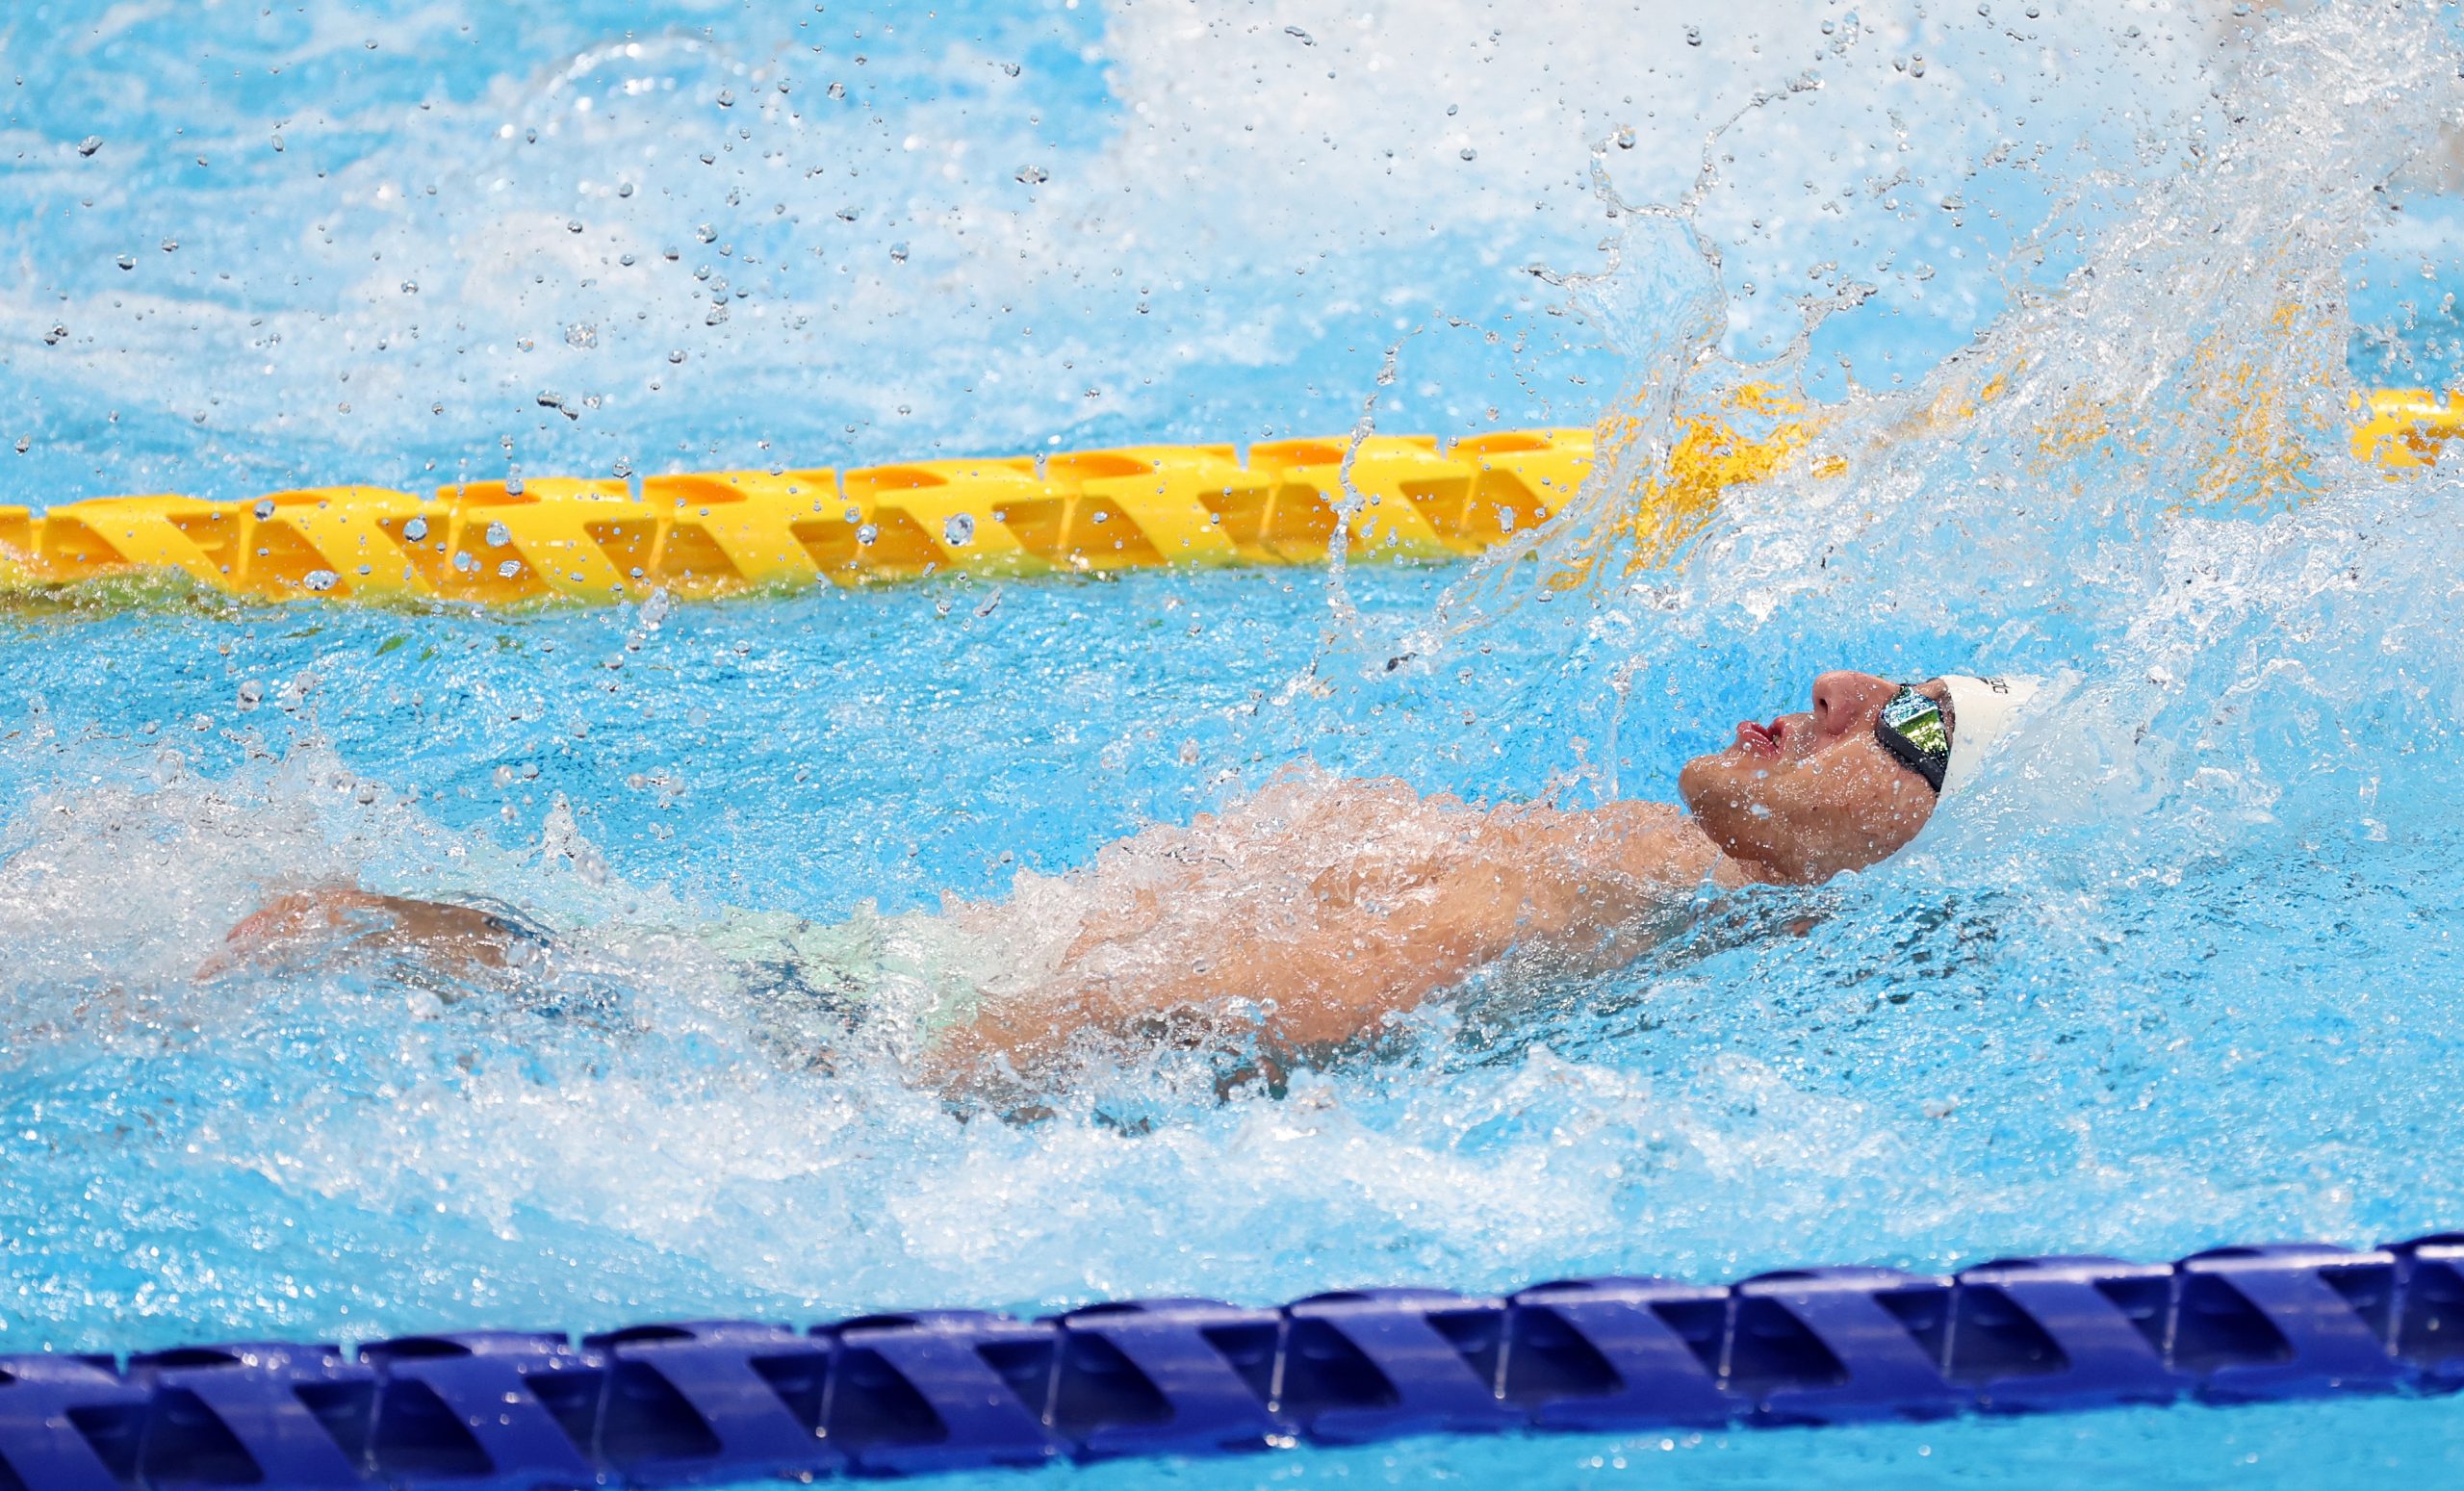 Tokio, 03.09.2021 - Hrvatski plivac Dino Sinovcic osvojio je broncanu medalju u utrci na 100 metara lednim stilom, kategorija S6, na Paraolimpijskim igrama Tokio 2020.
foto HINA/ Damir SENCAR/ ds